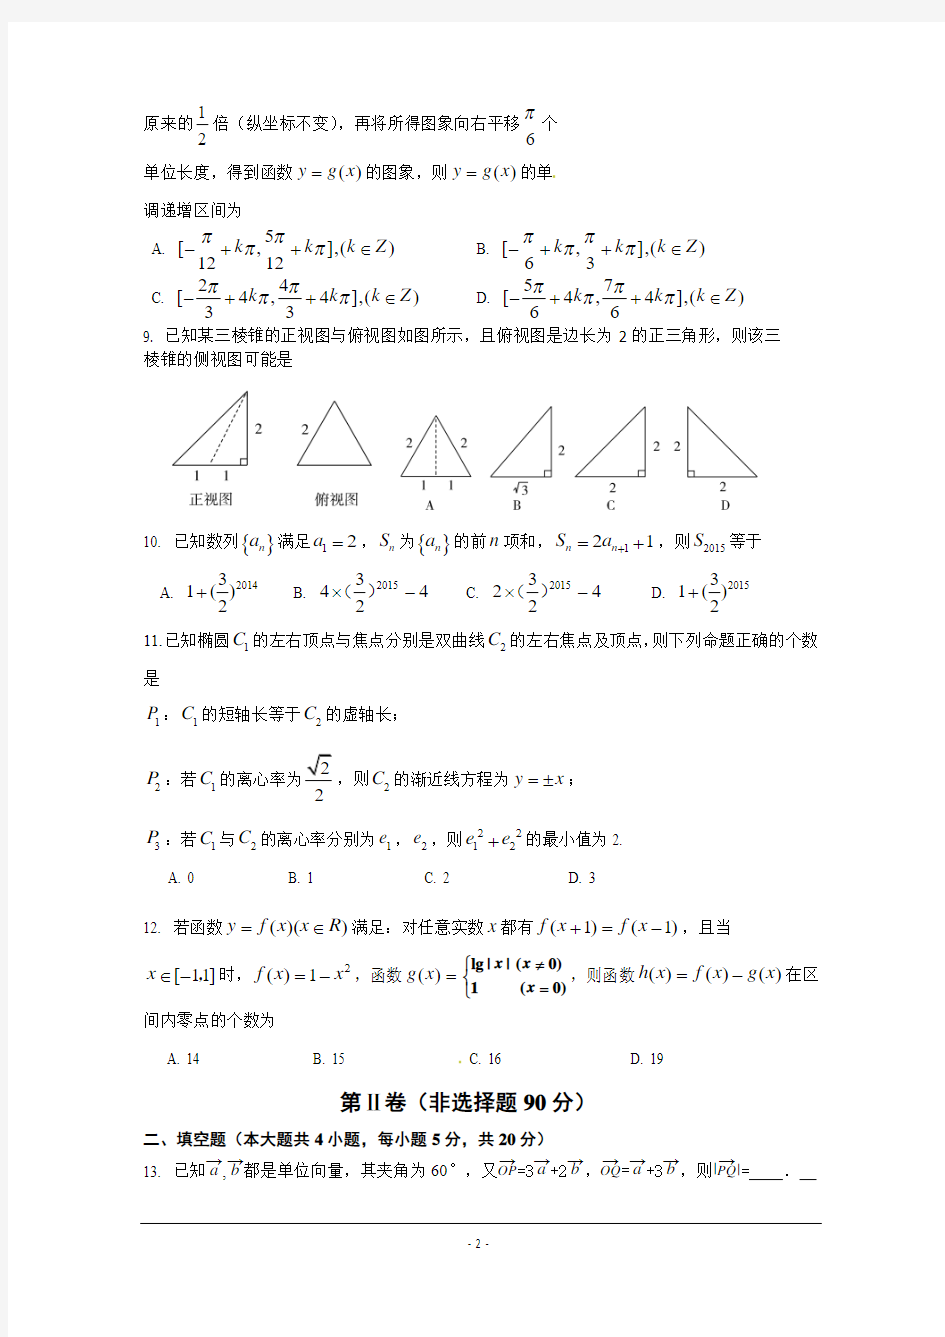 2015届高三高考考前仿真训练(一)数学(文)试题